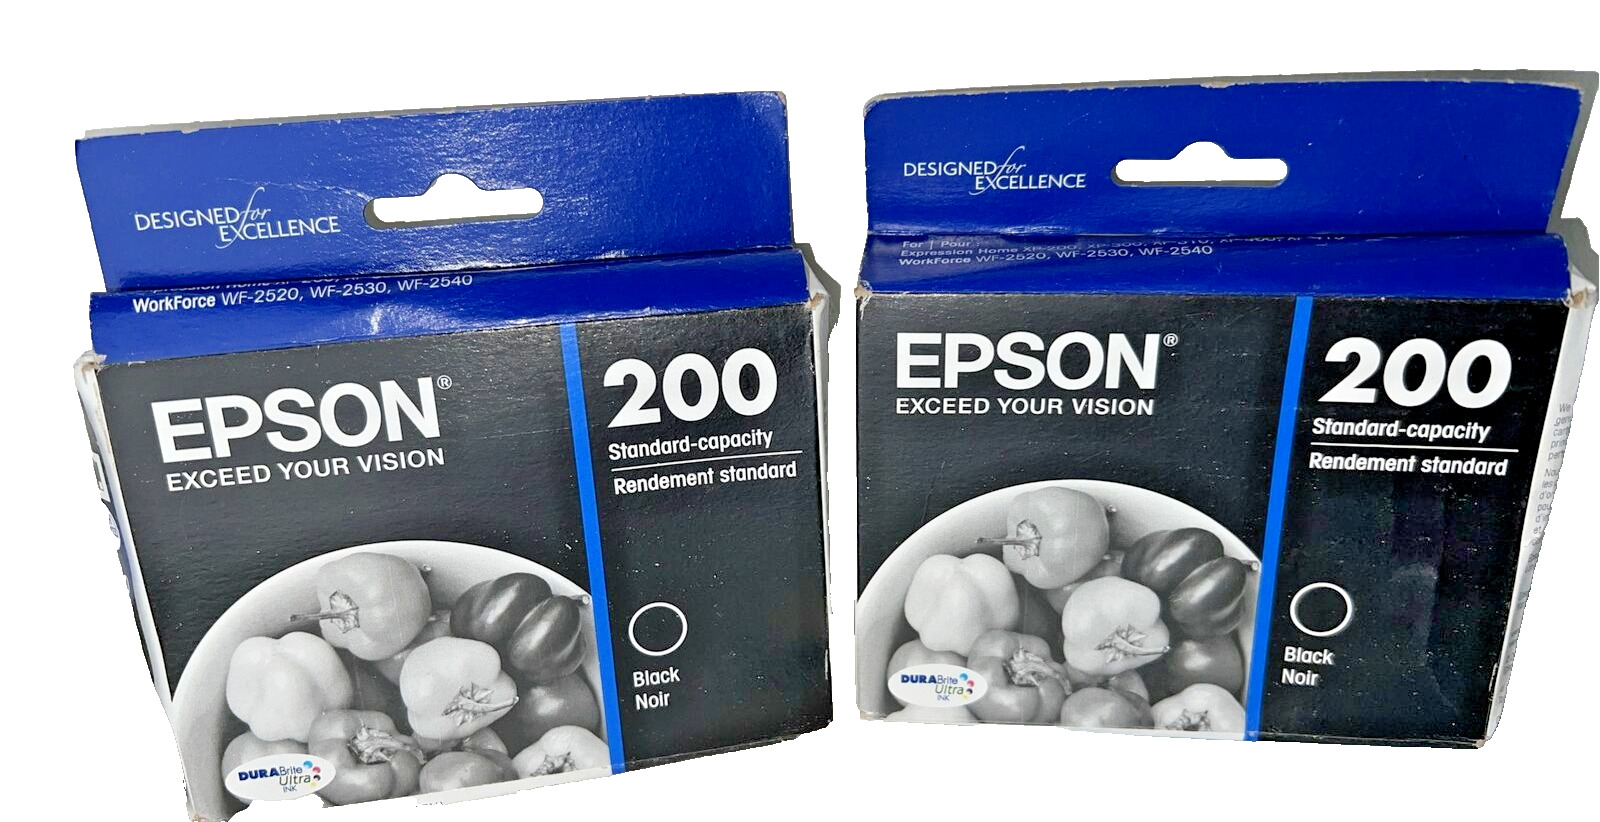 Epson T200120 200 Standard-Capacity Black Ink Cartridge (2 PACK)